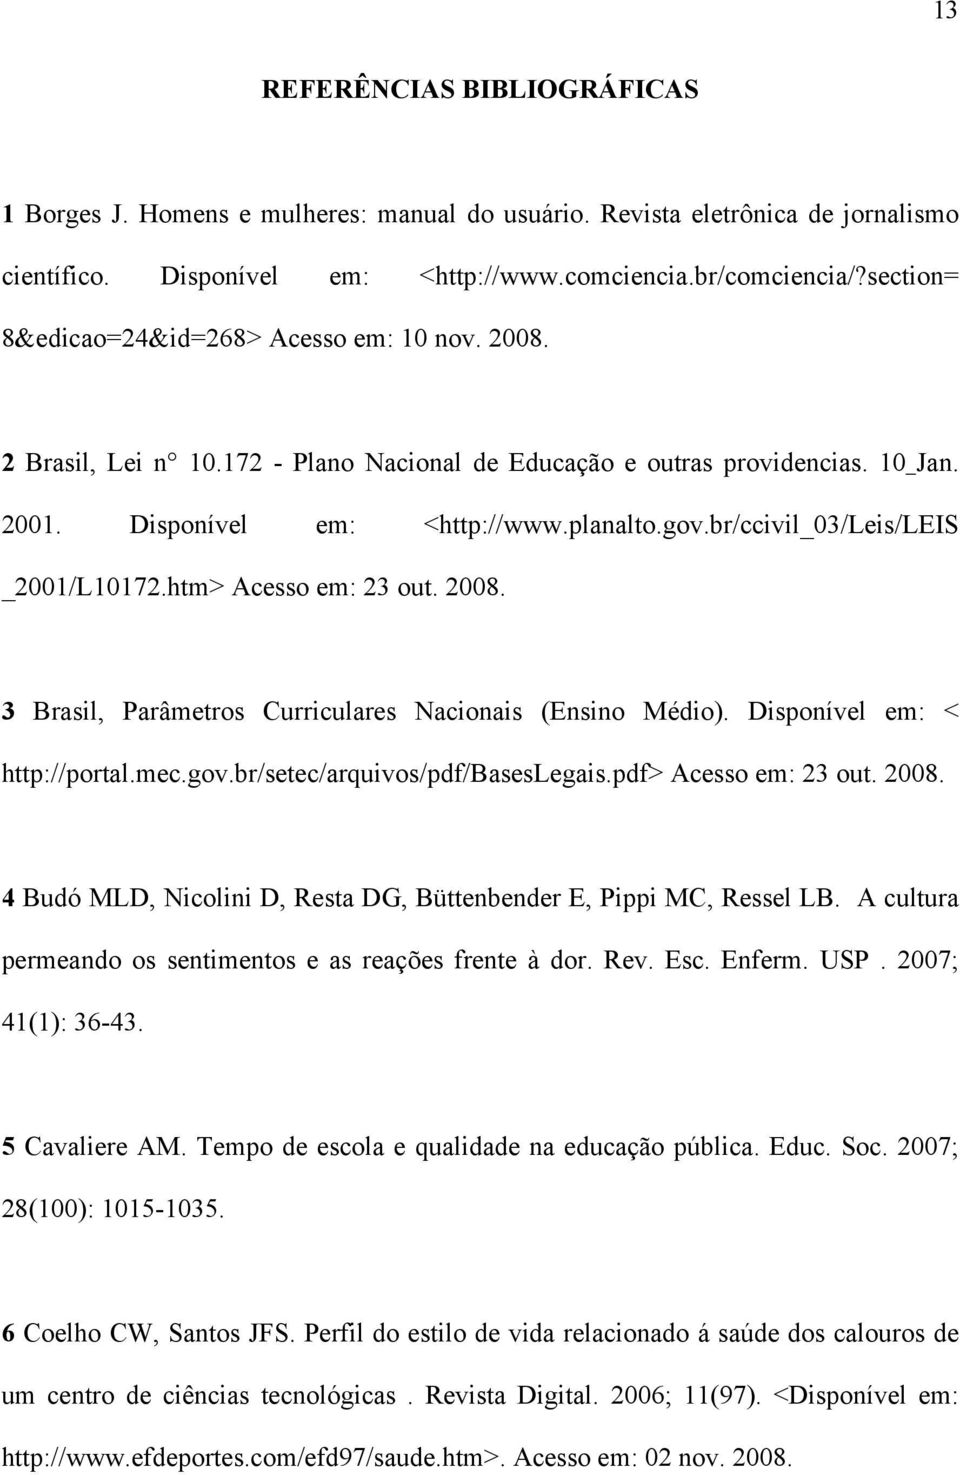 br/ccivil_03/leis/leis _2001/L10172.htm> Acesso em: 23 out. 2008. 3 Brasil, Parâmetros Curriculares Nacionais (Ensino Médio). Disponível em: < http://portal.mec.gov.br/setec/arquivos/pdf/baseslegais.